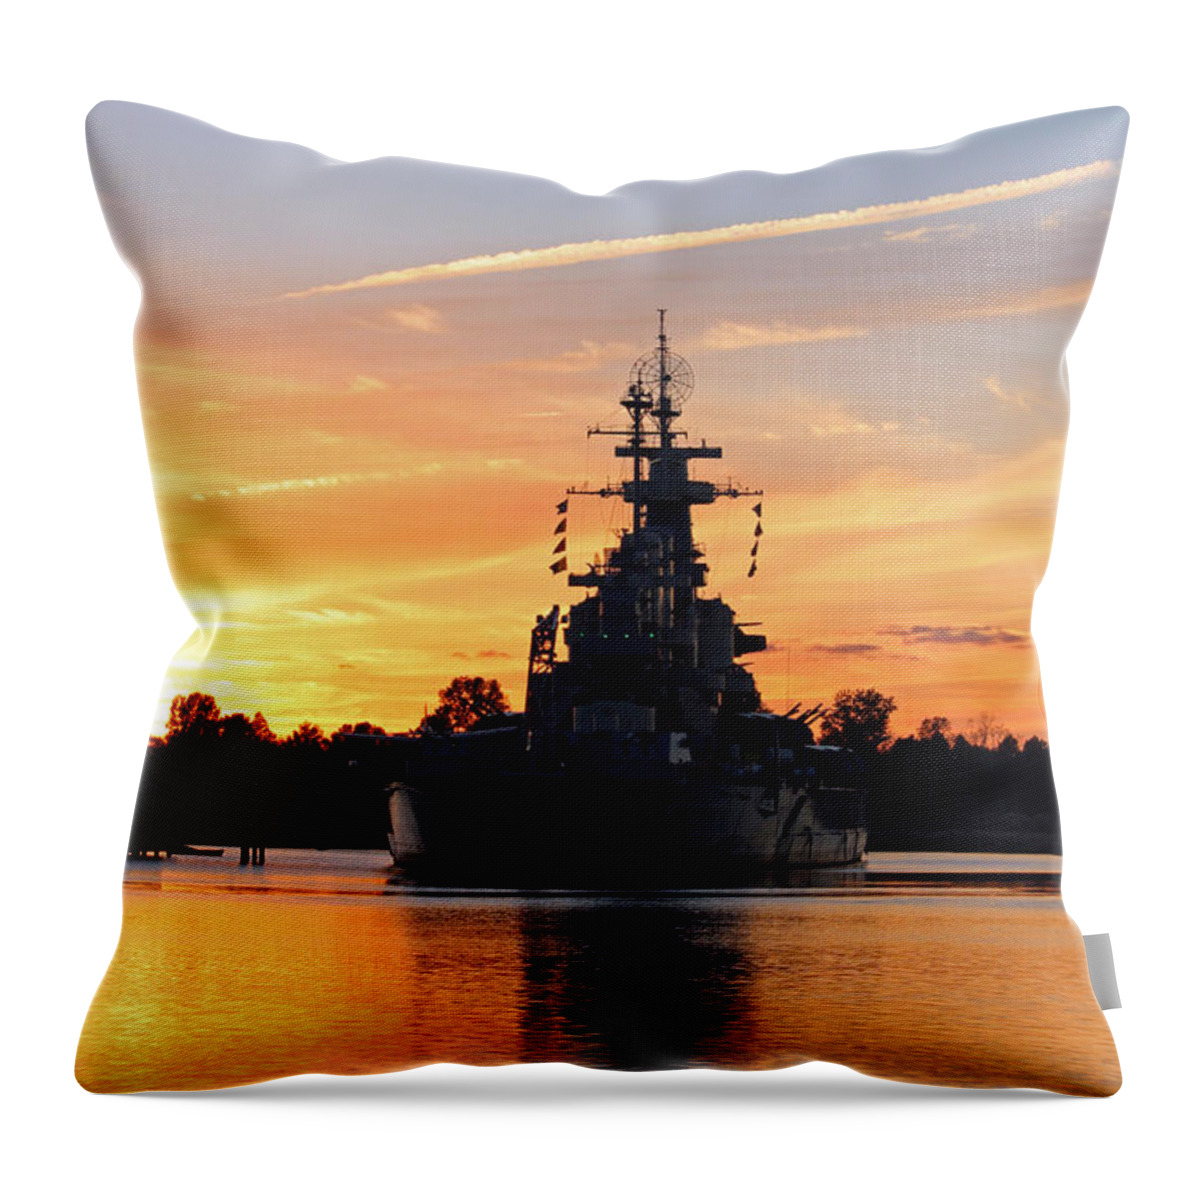 Battleship Throw Pillow featuring the photograph USS Battleship by Cynthia Guinn